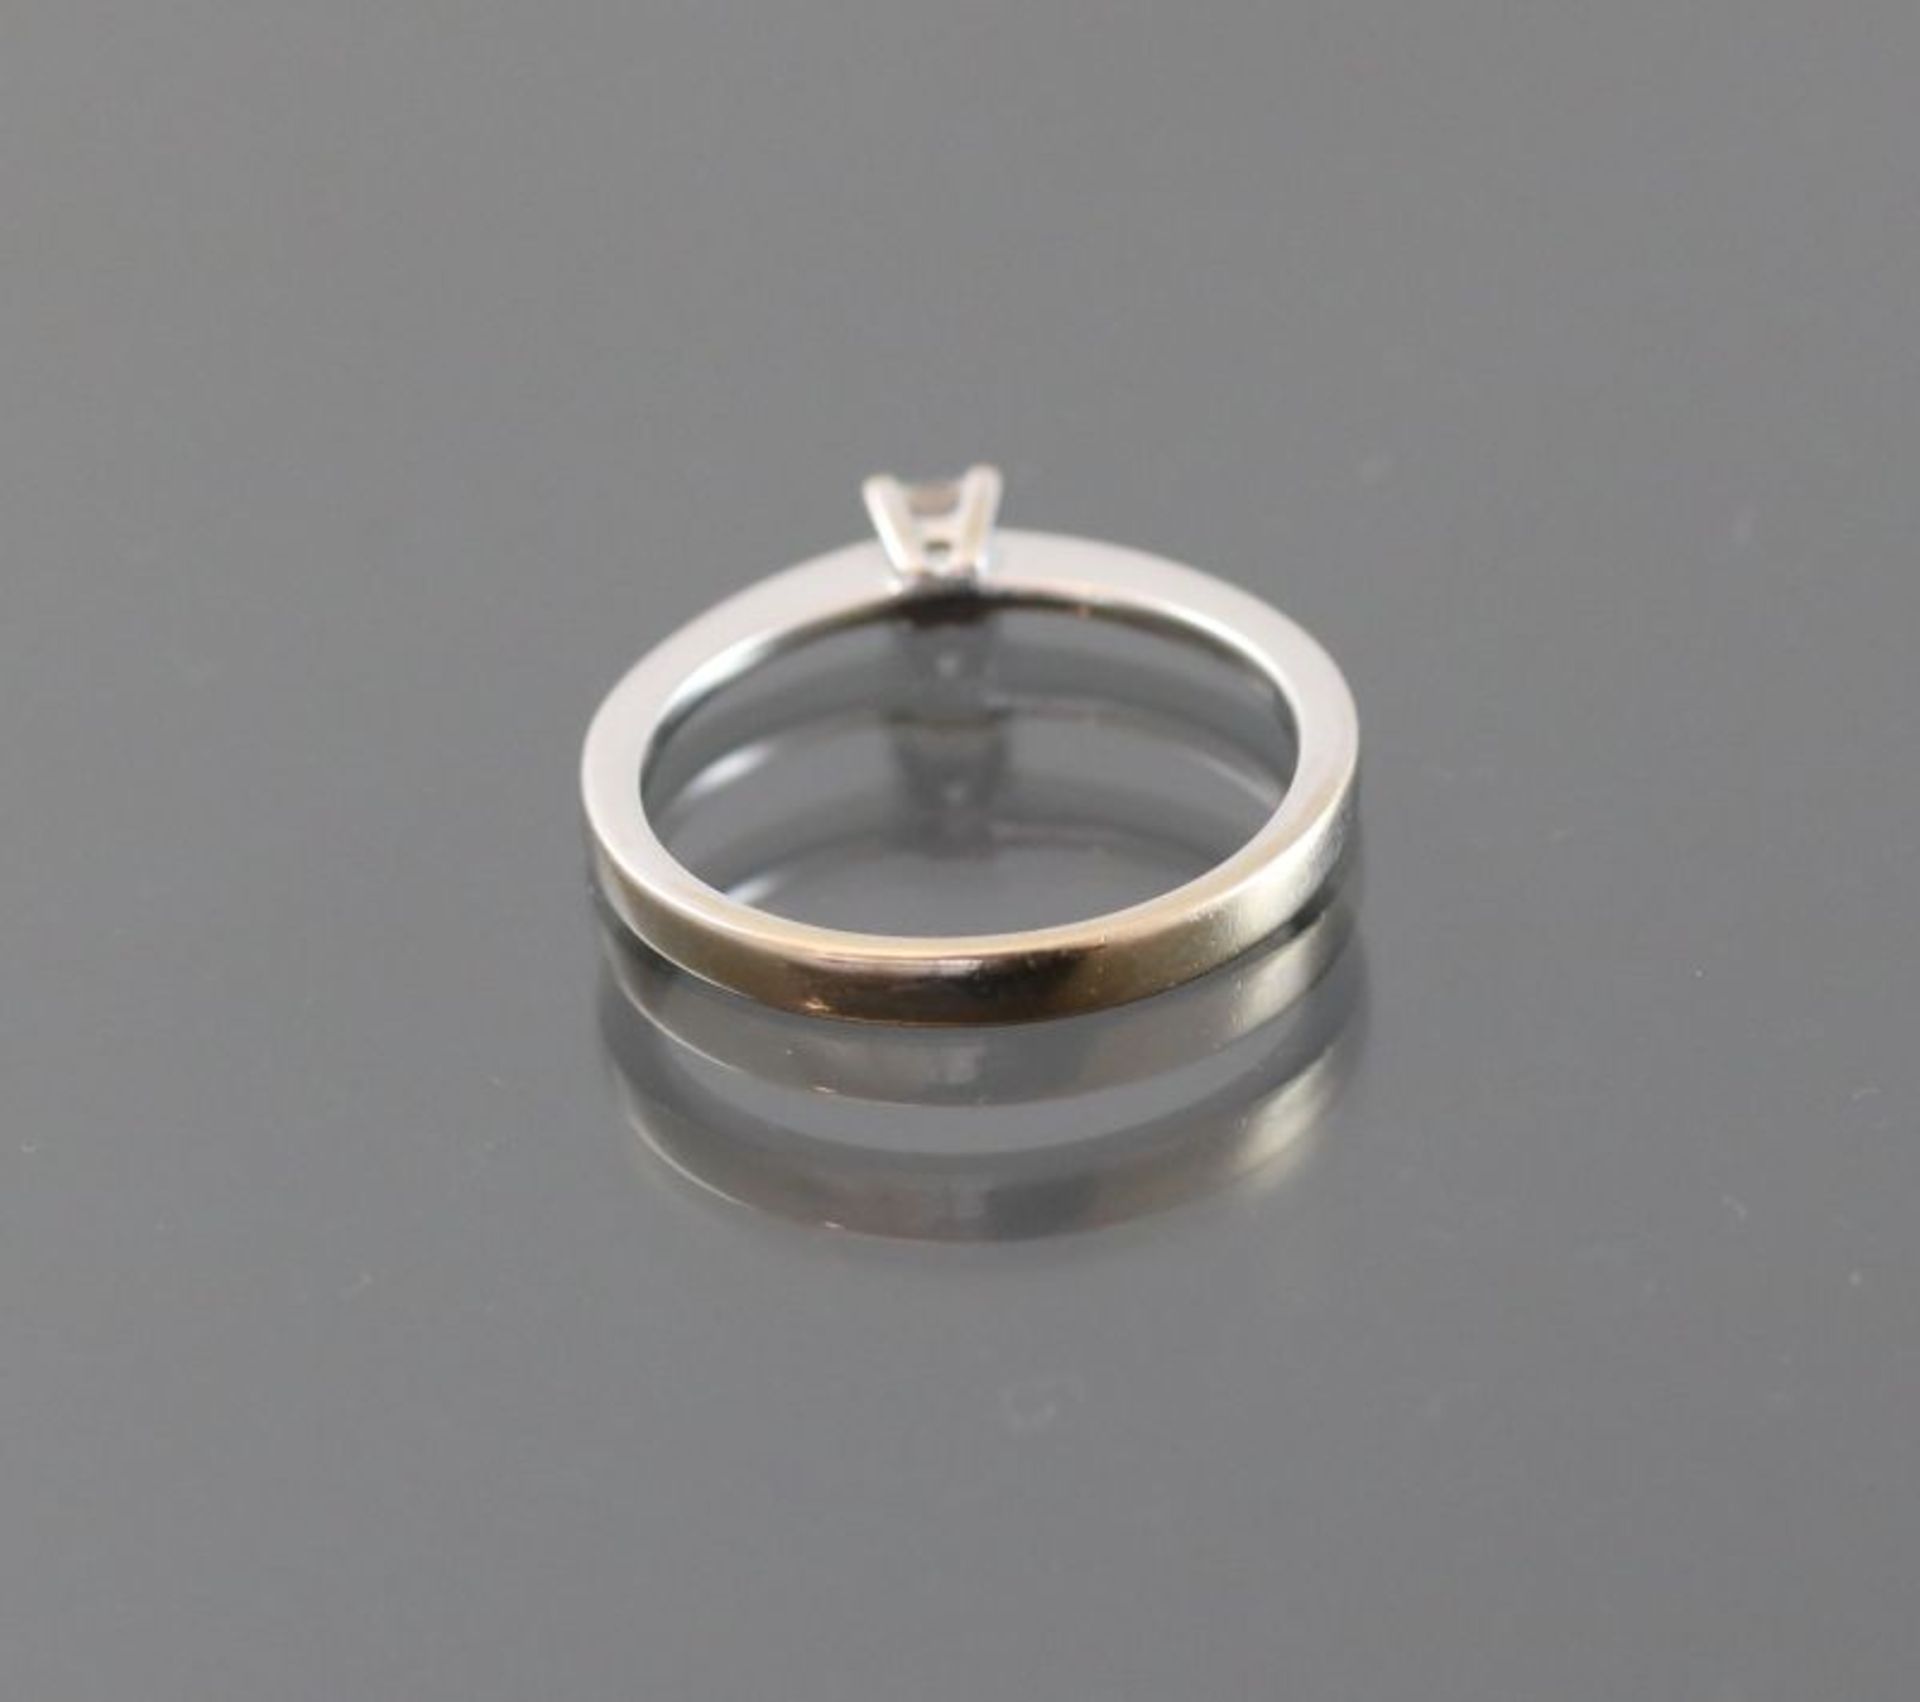 Diamant-Ring, 750 Weißgold2,5 Gramm 1 Diamantcarre, 0,15 ct., Ringgröße: 53,5Schätzpreis: 700,- - Bild 3 aus 3